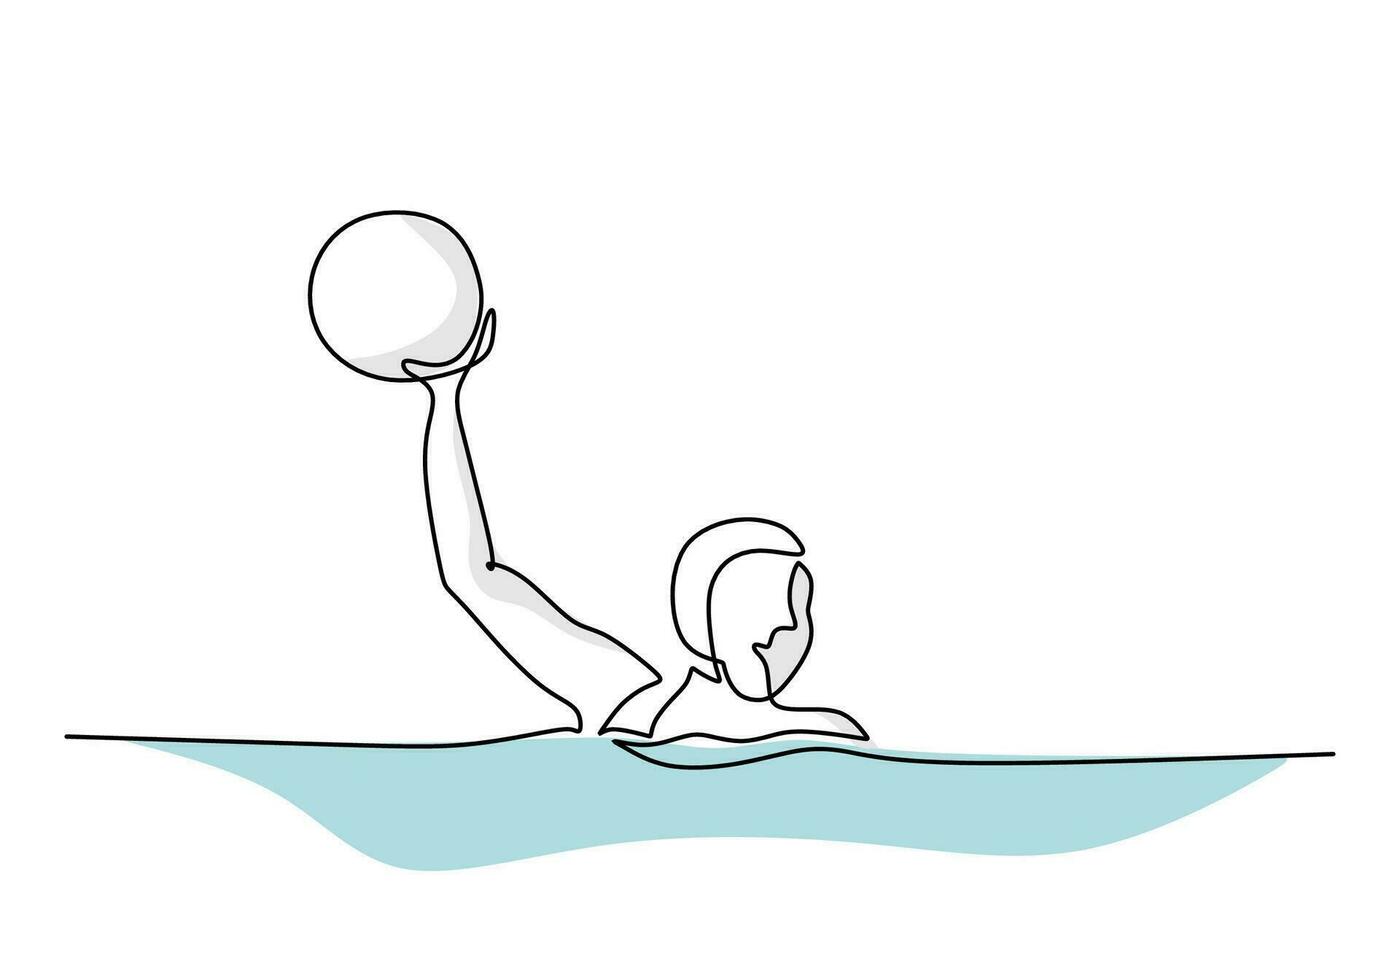 acqua polo giocatore continuo linea disegno, sport gioco mano disegnato vettore